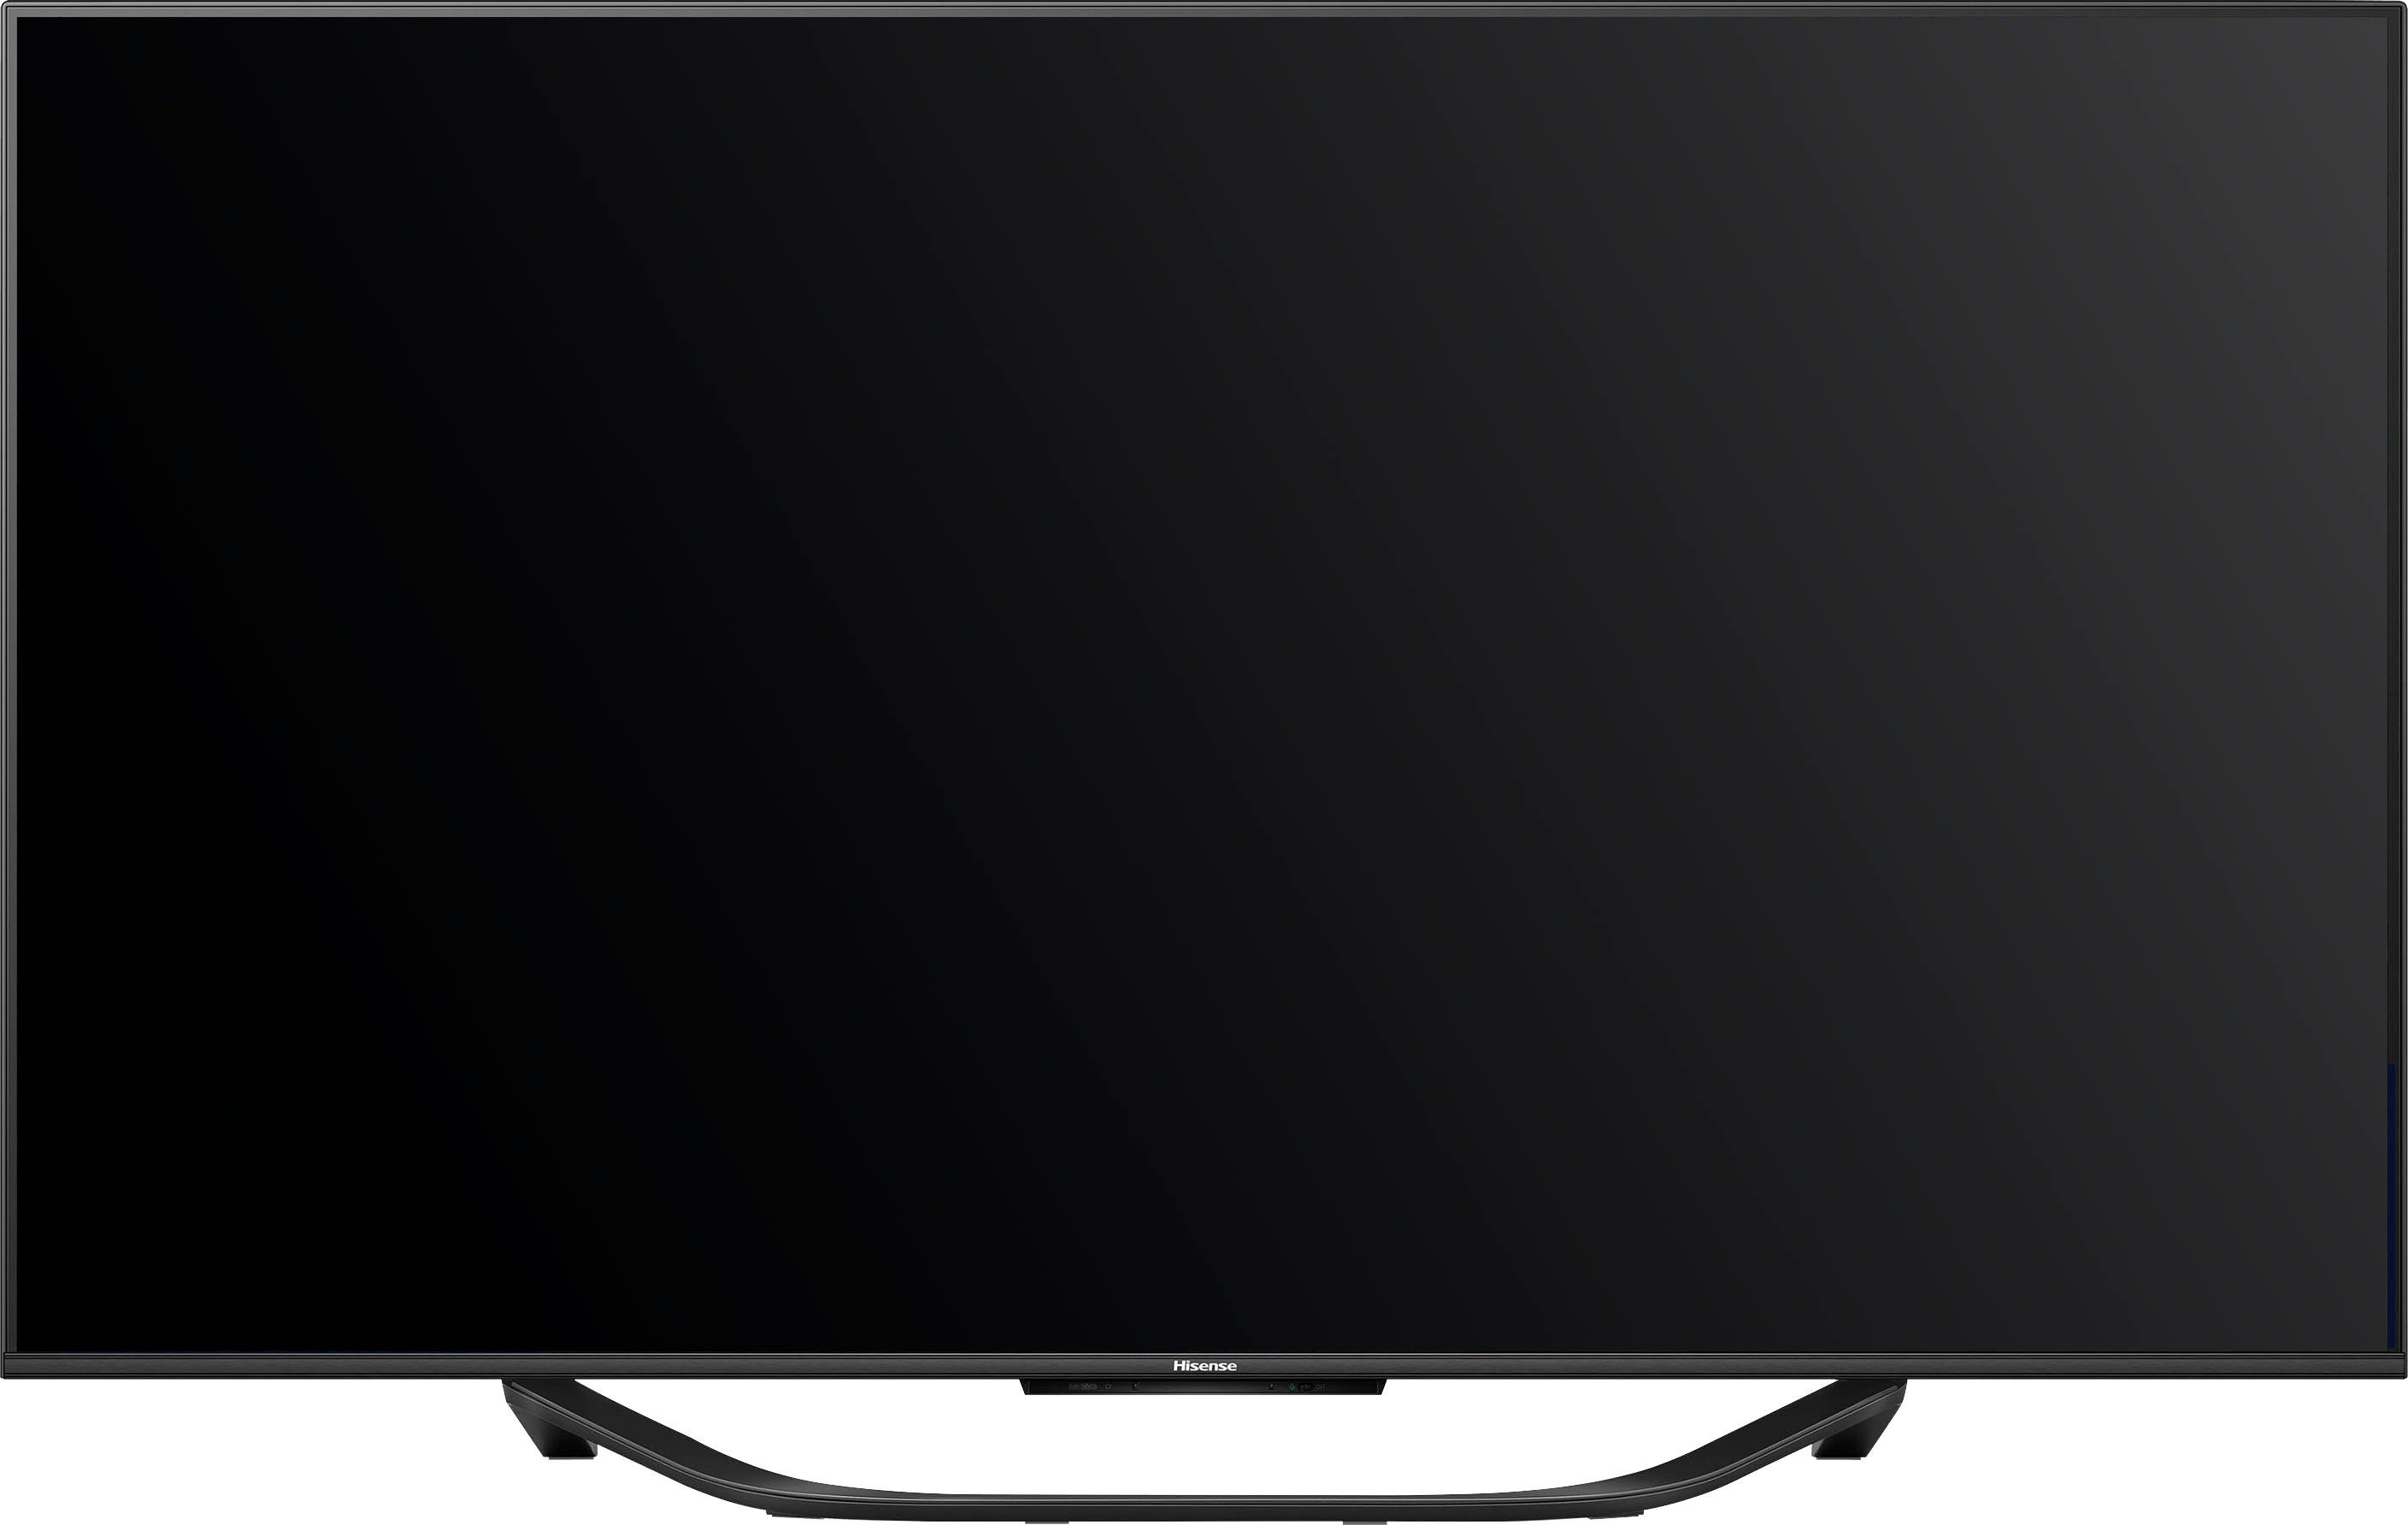 Ultra 4K (139 Mini-LED-Fernseher Hisense Zoll, HD, 55U7KQ Smart-TV) cm/55